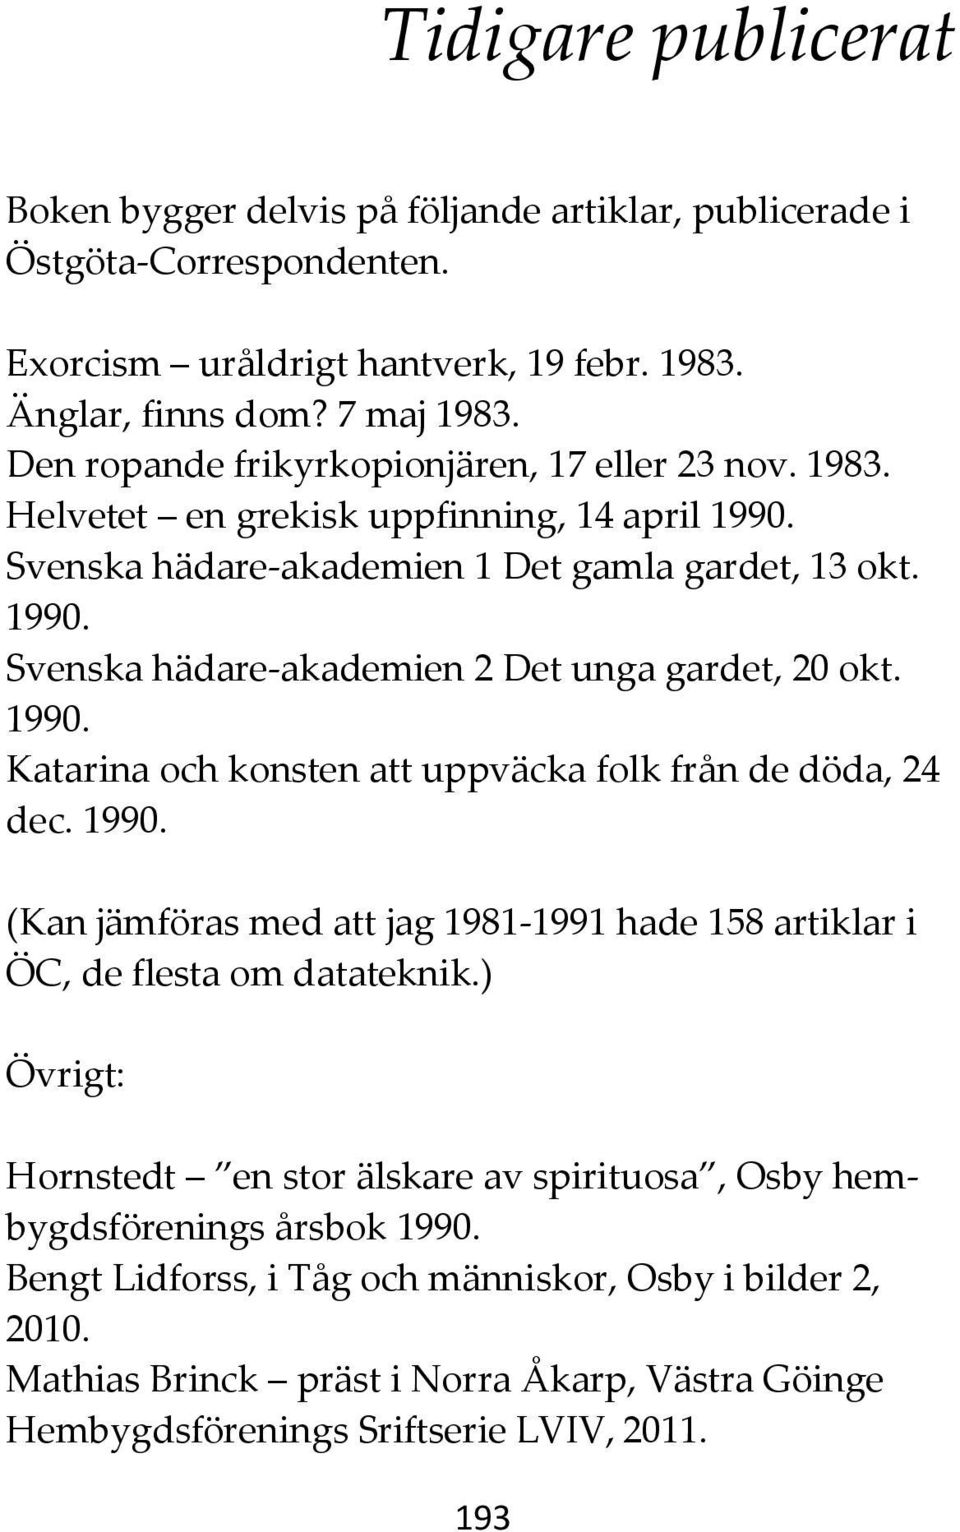 1990. Katarina och konsten att uppväcka folk från de döda, 24 dec. 1990. (Kan jämföras med att jag 1981-1991 hade 158 artiklar i ÖC, de flesta om datateknik.